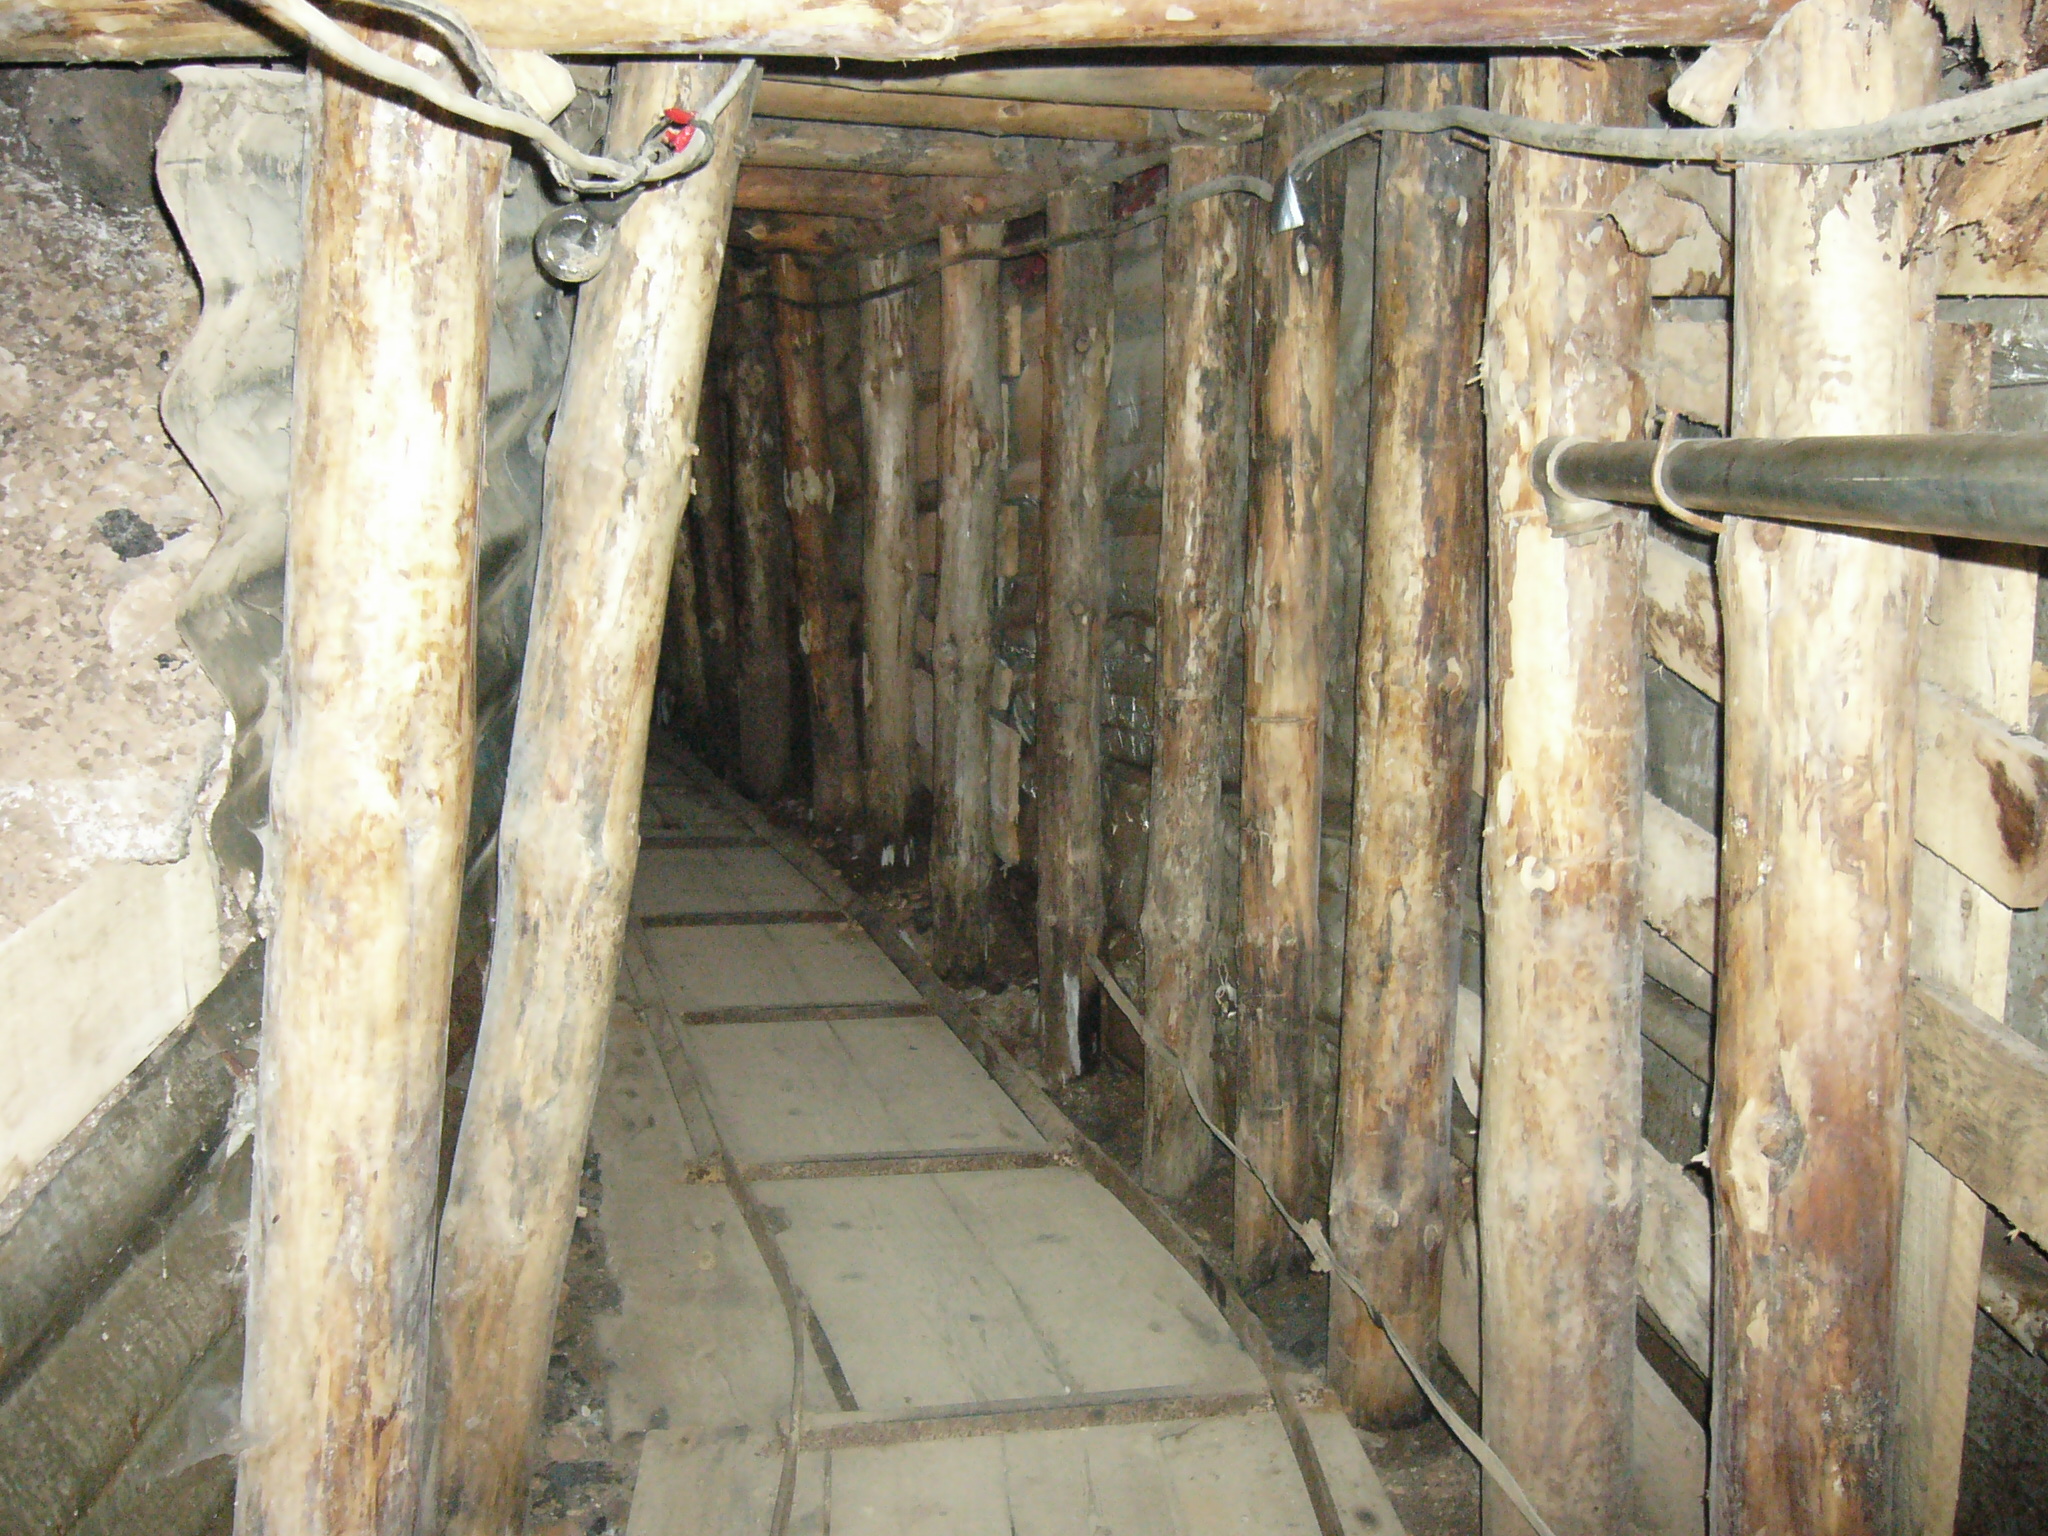 A szarajevói alagút egyik föld alatti szakasza